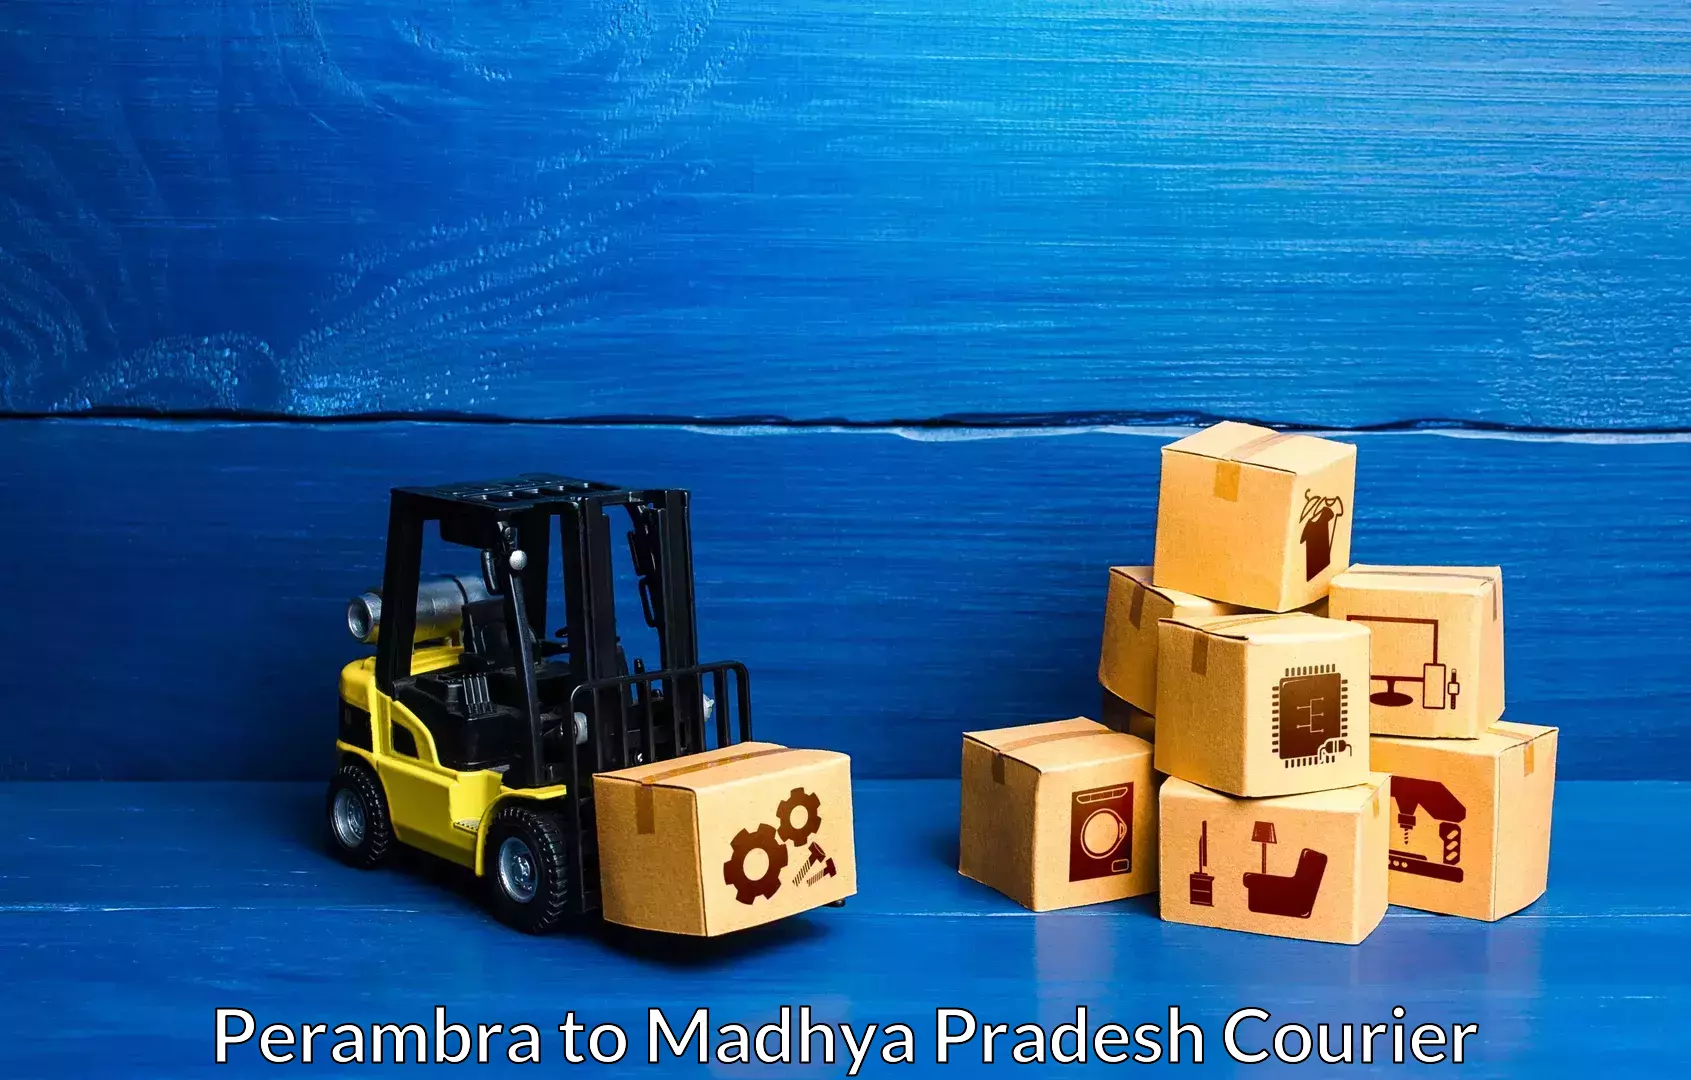 Premium moving services Perambra to Anuppur